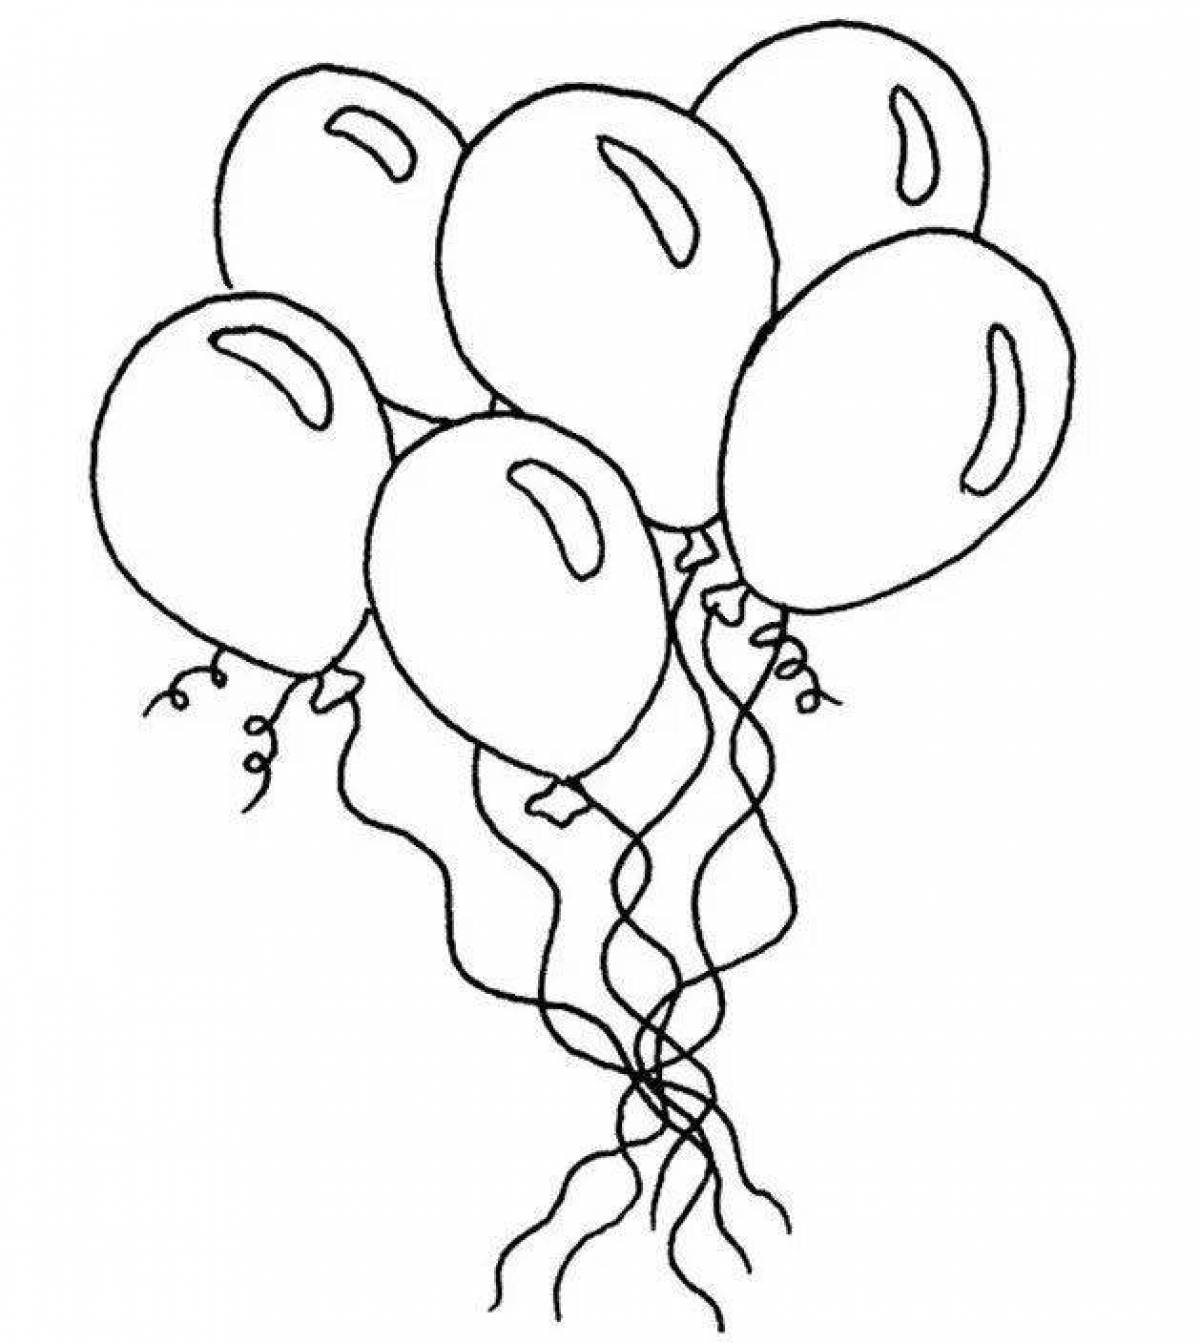 Раскраски шарика распечатать. Воздушный шарик раскраска. Шарики раскраска. Раскраска шарики воздушные для детей. Воздушные шары раскраска для детей.